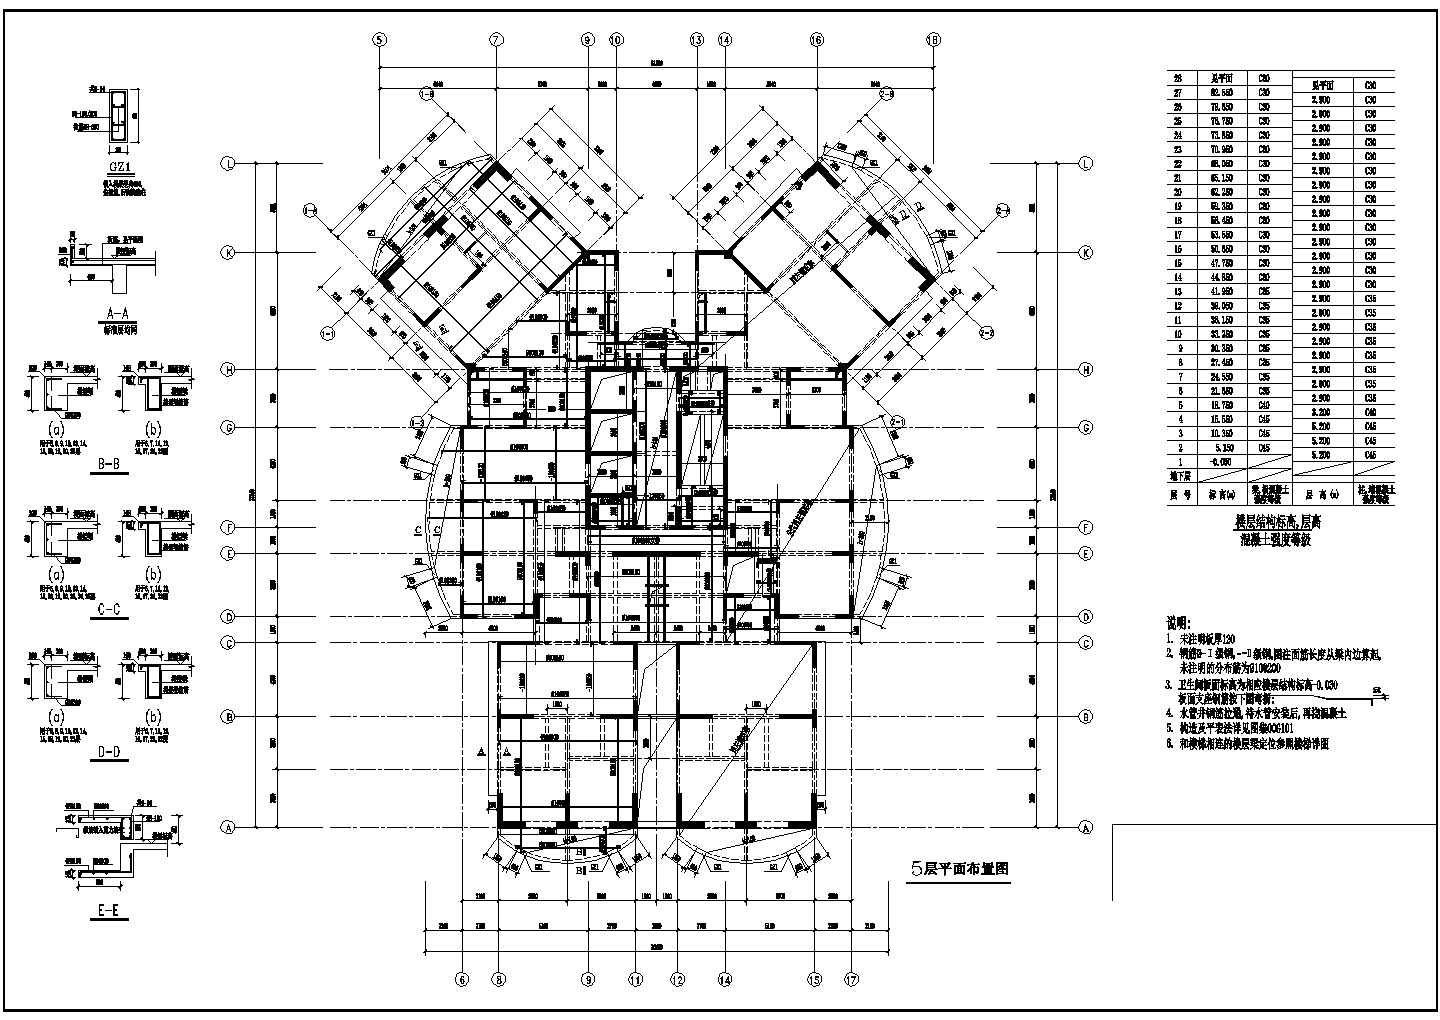 茶南28层住宅楼转换层以上梁板平面配筋图